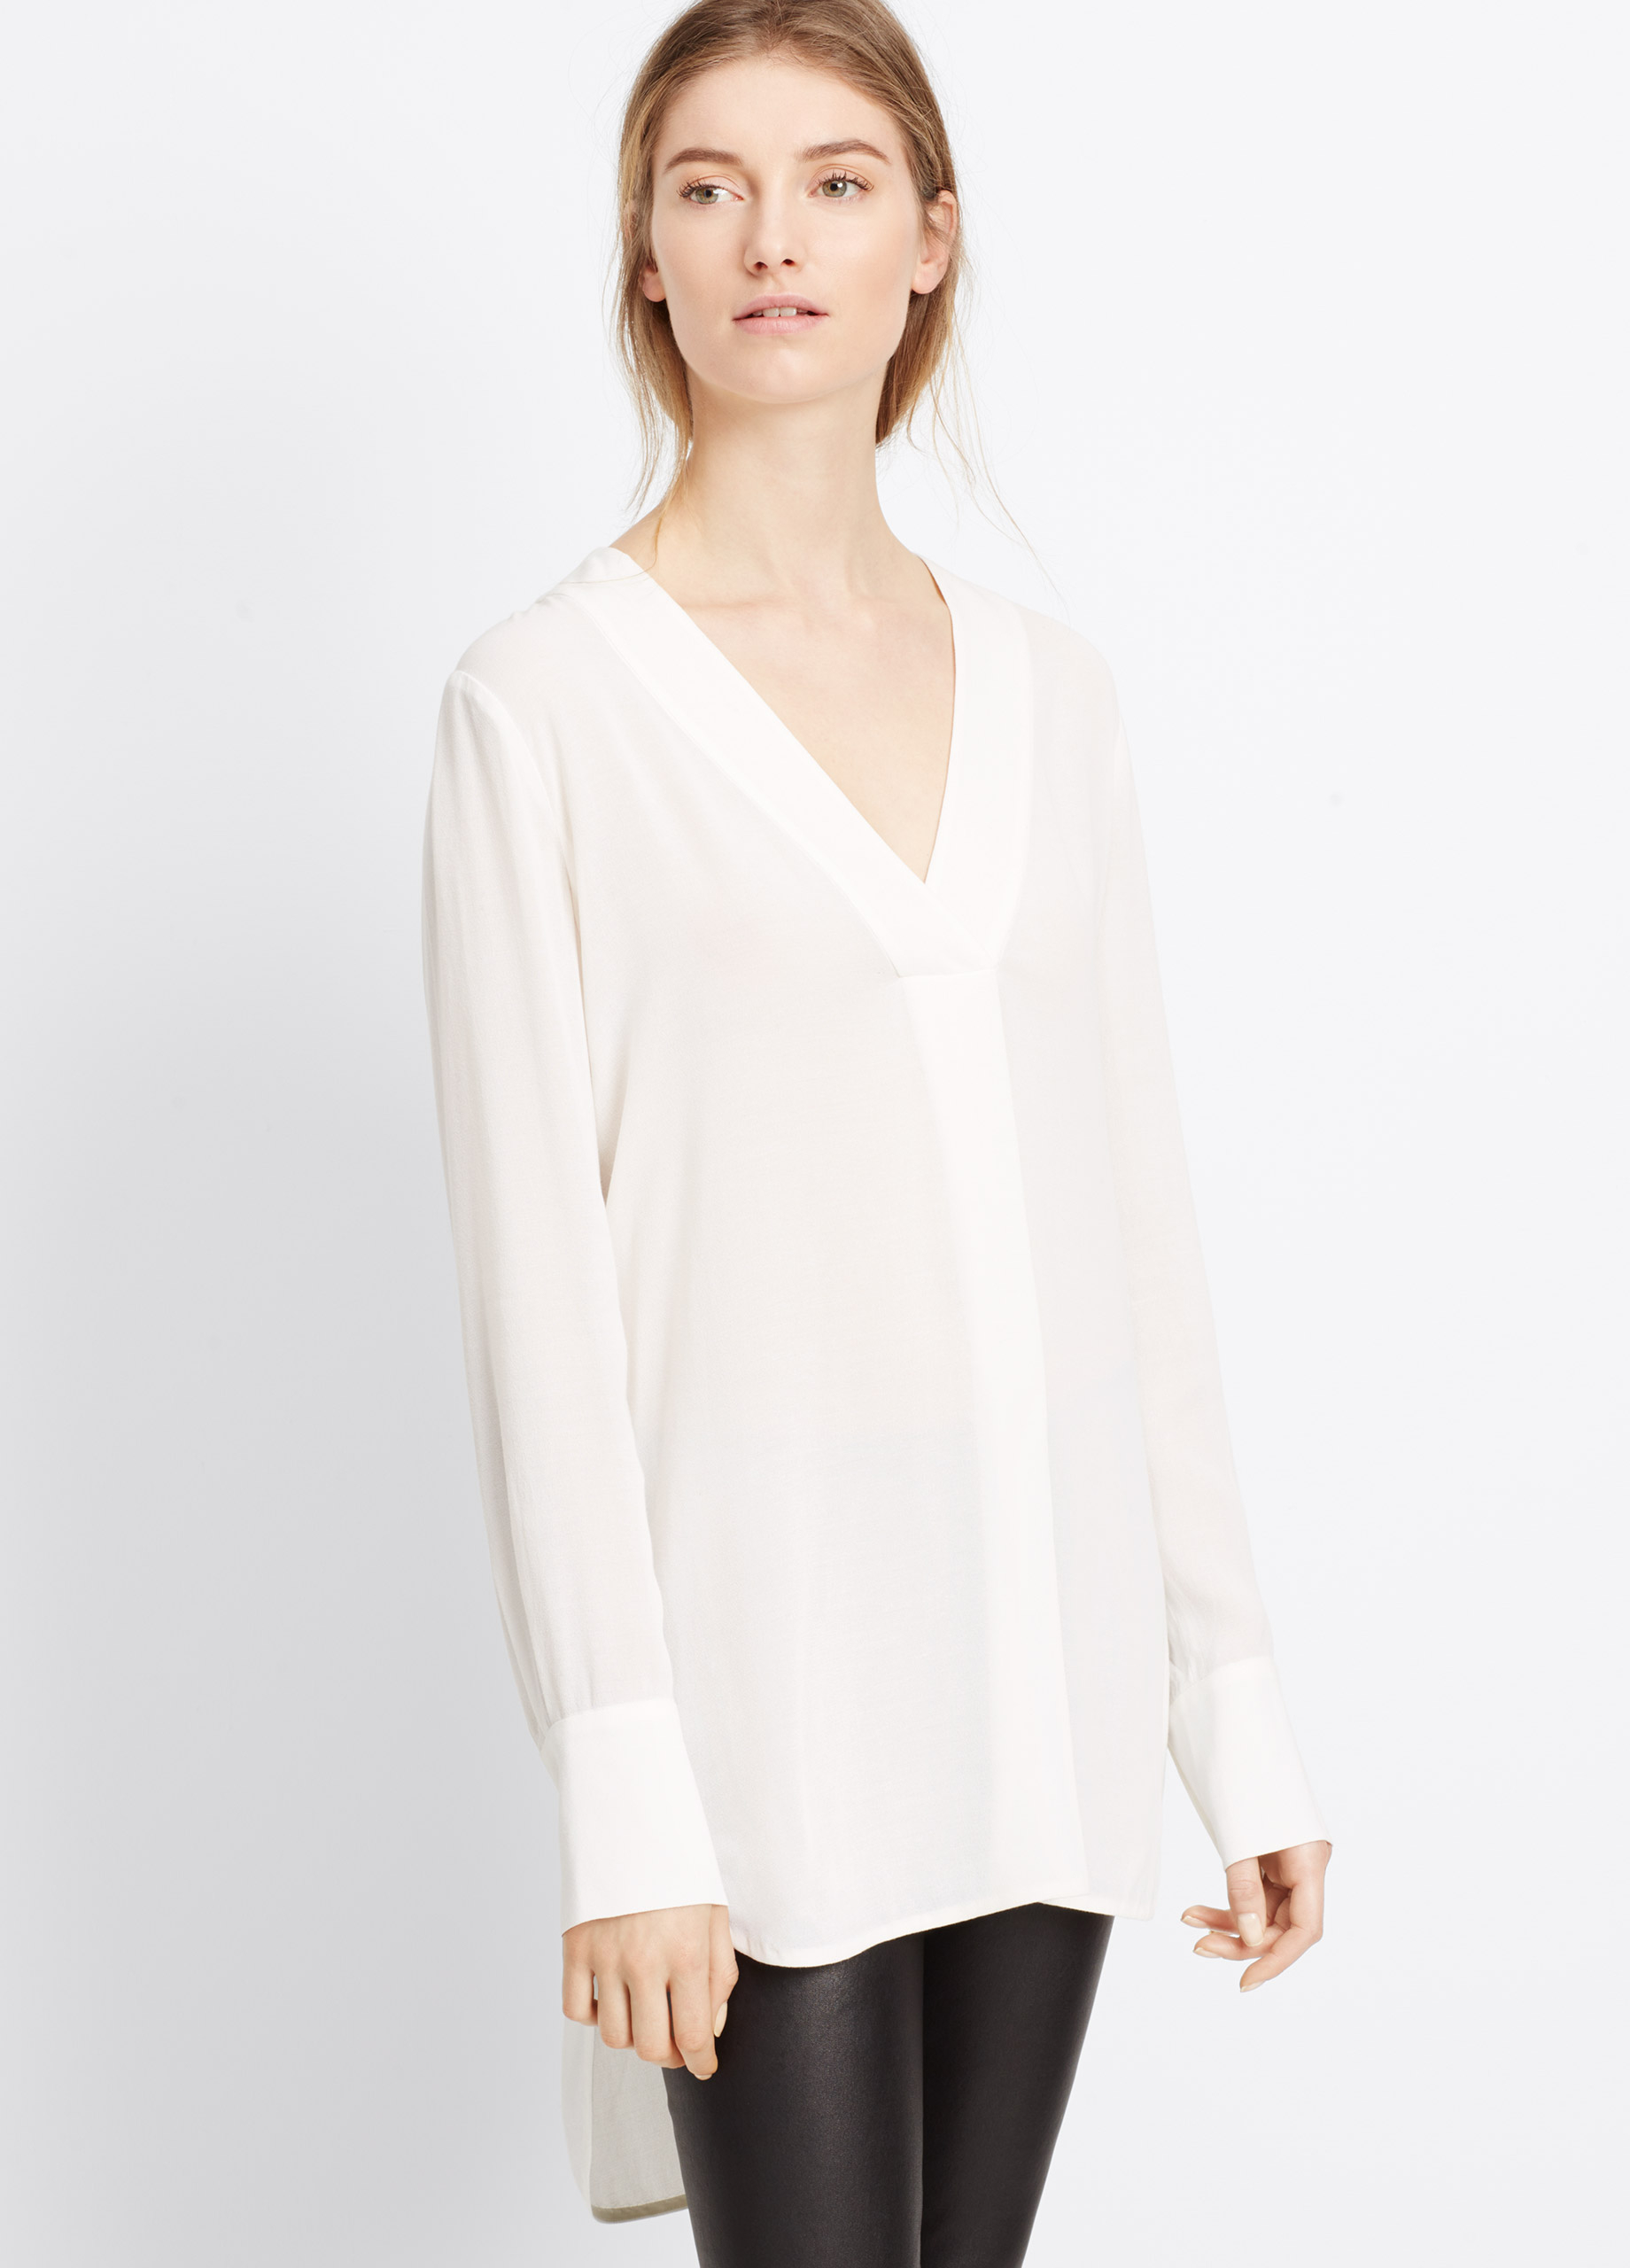 white satin blouse long sleeve tops 2017